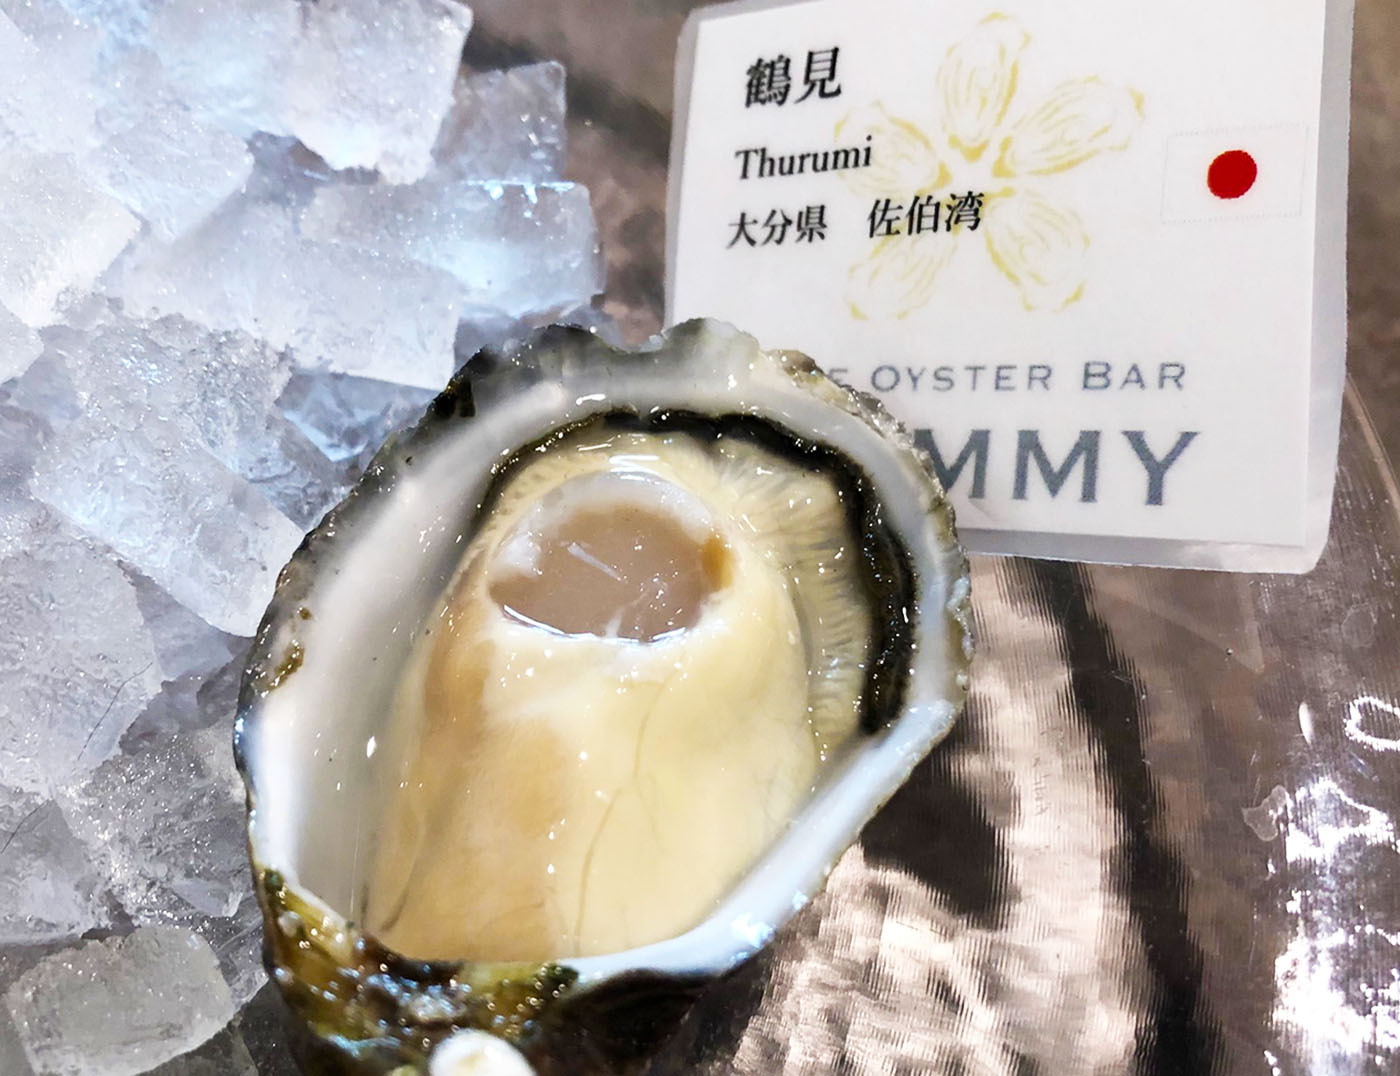 オイスターバーYUMMY浦和店・牡蠣三昧ランチセットについてきた大分県佐伯湾鶴見の生牡蠣